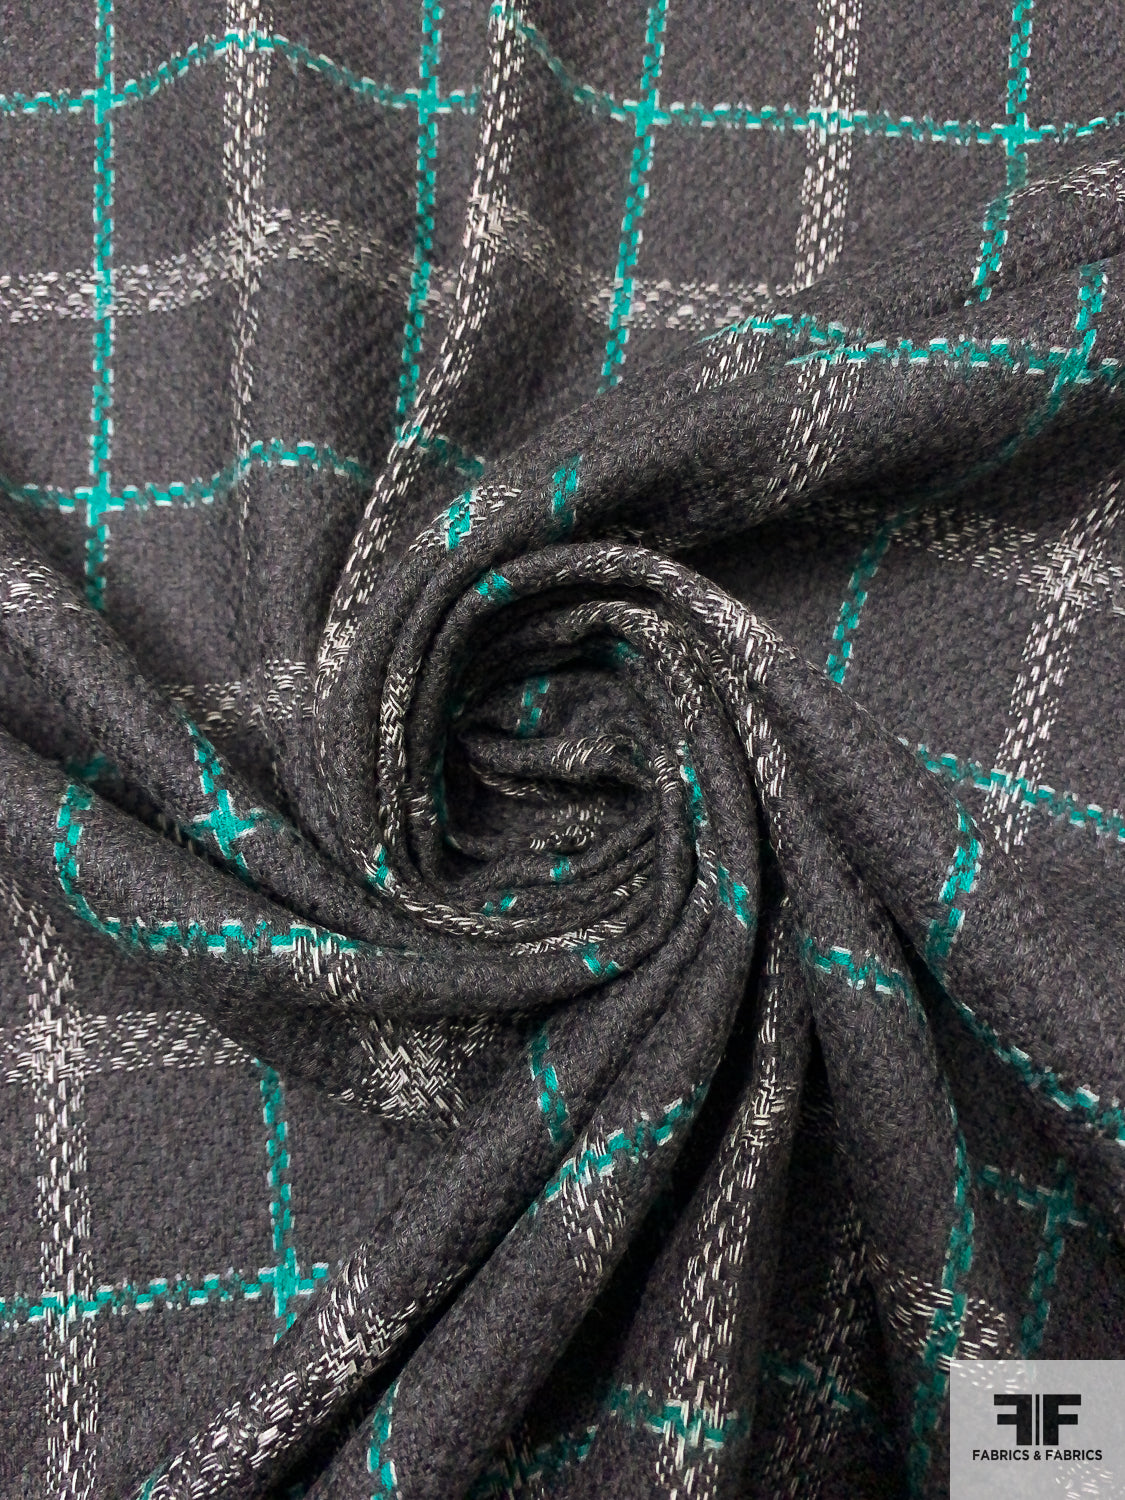 Windowpane Plaid Wool Tweed Suiting - Dark Grey / Jade Green / Off-White